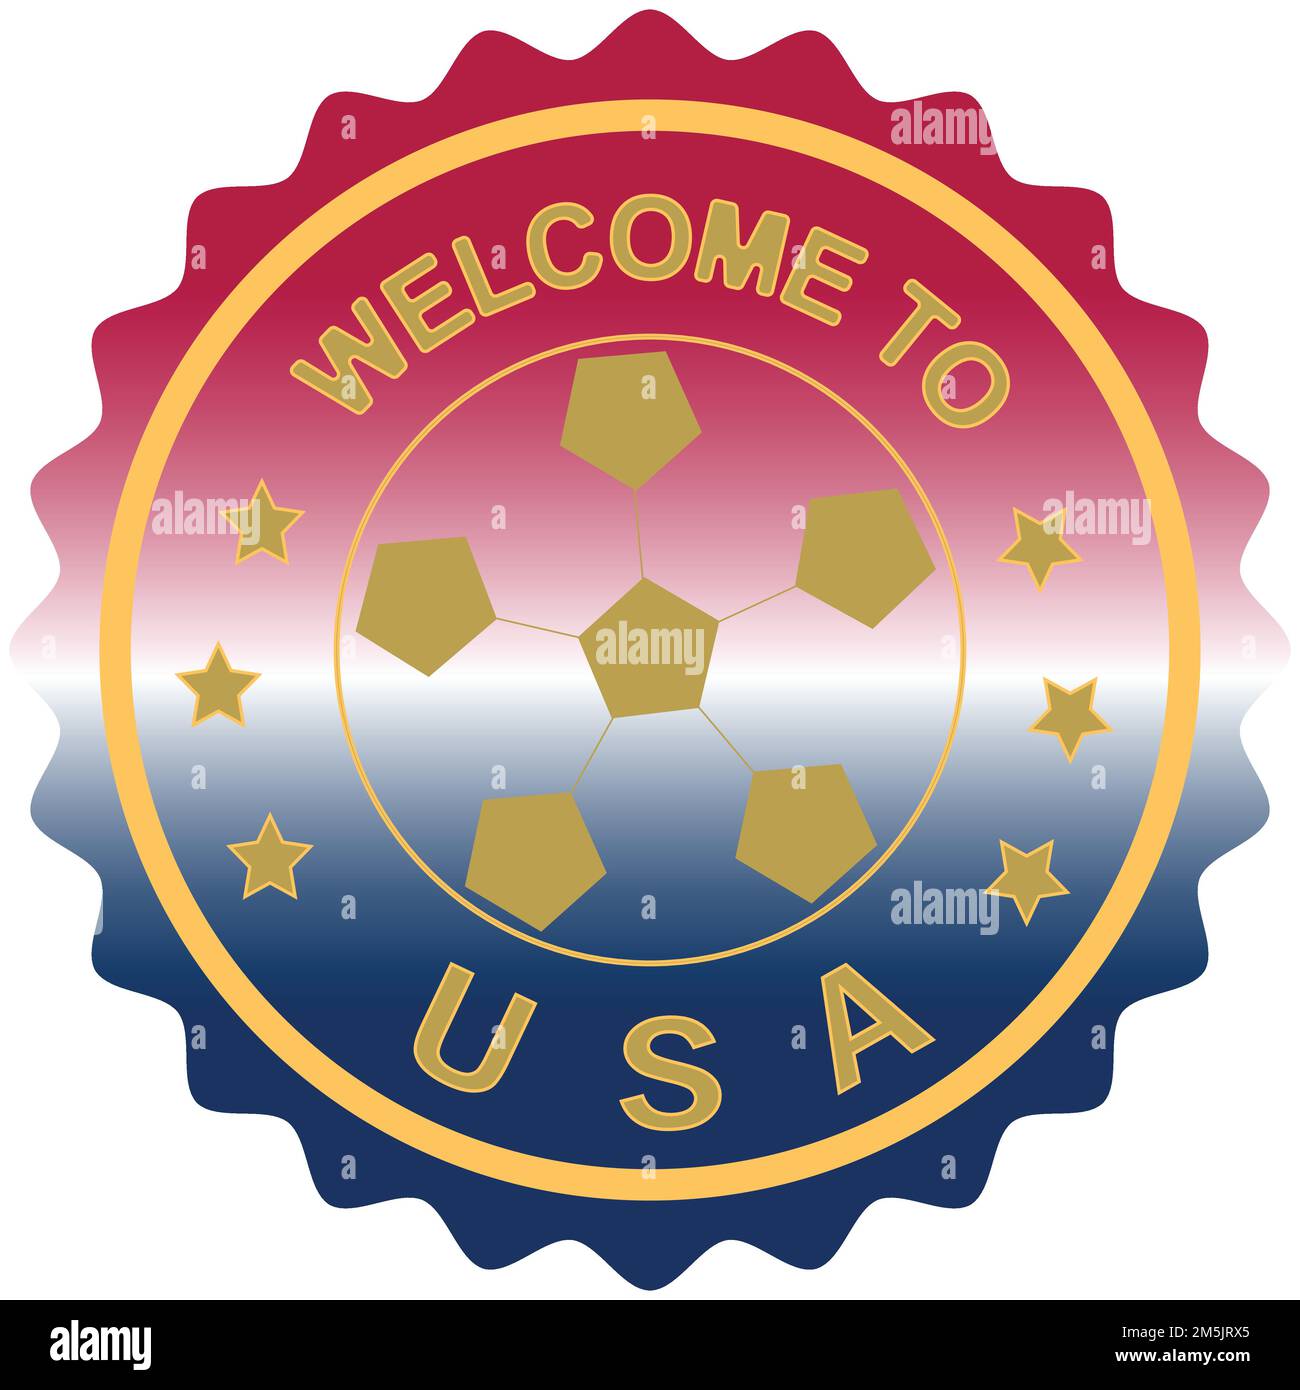 Willkommen bei den USA farbenfrohes, abgestuftes Pinseldesign Vektordarstellung USA Flaggenfarben Hintergrund Willkommensstempel Willkommen Gäste willkommen FIFA Fußball-Weltmeisterschaft USA Gold Seal Stock Vektor